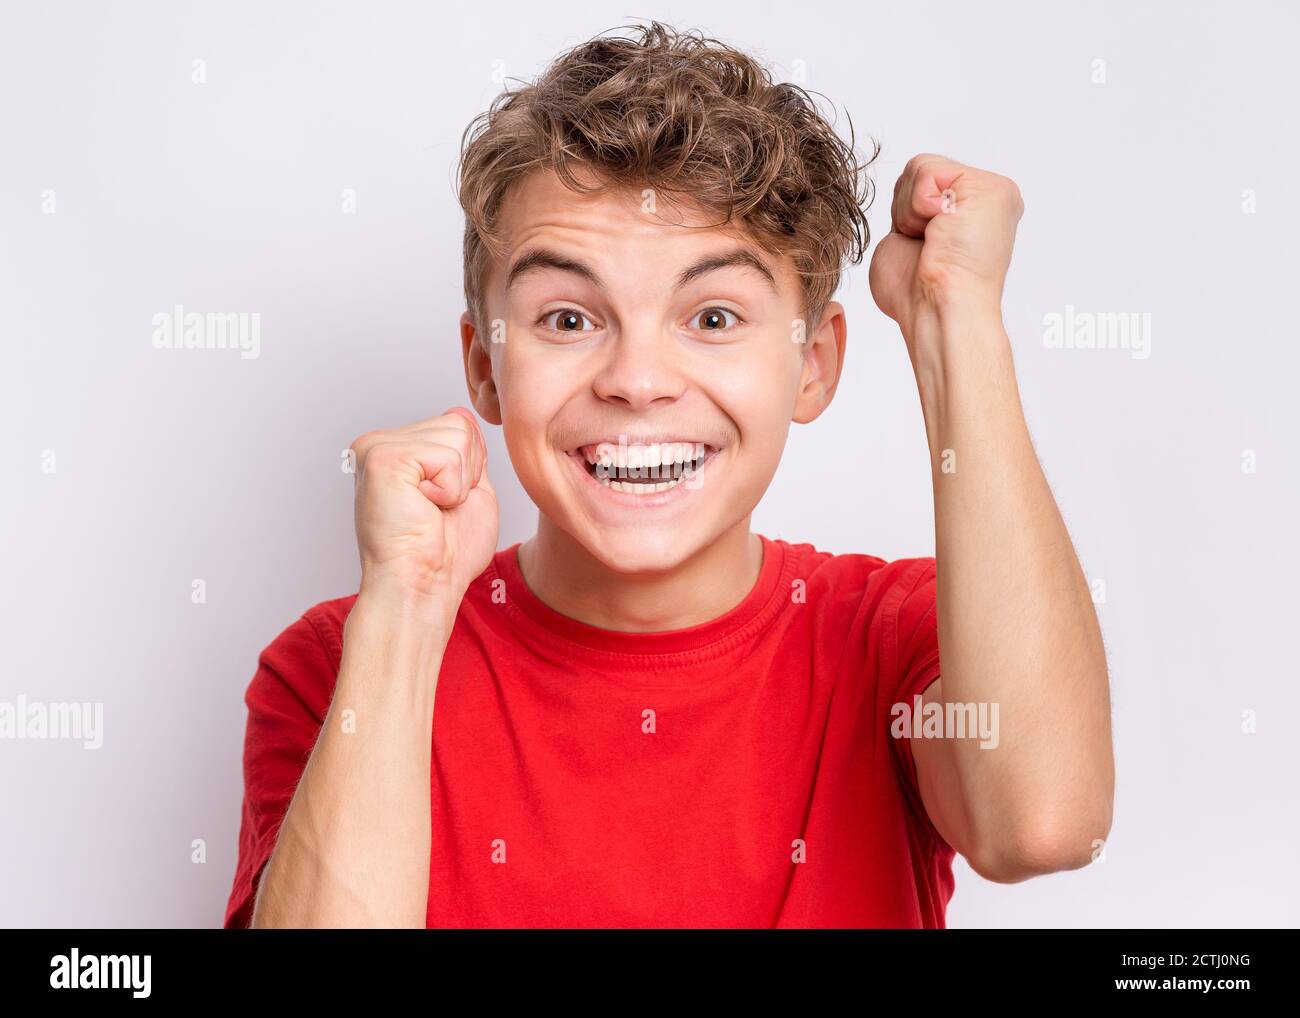 Ritratto di teen boy felice ed eccitato esprimendo gesto vincente. Successo e celebrazione della vittoria, bambino trionfante su sfondo grigio. Foto Stock